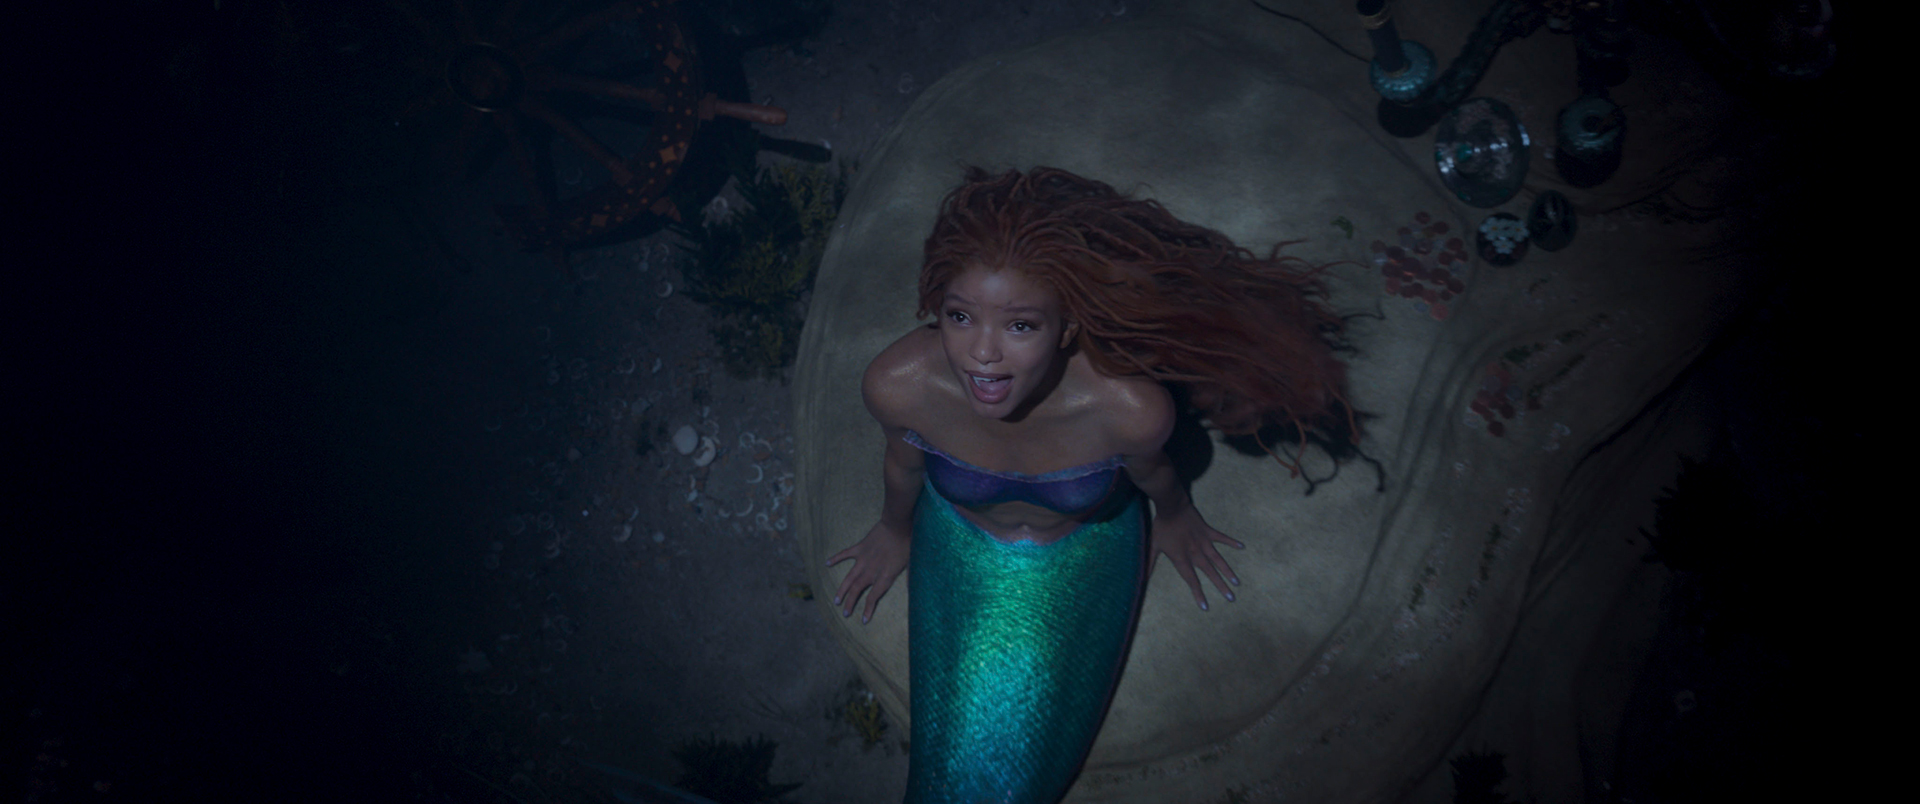 Disney divulga teaser do live-action de “A Pequena Sereia”